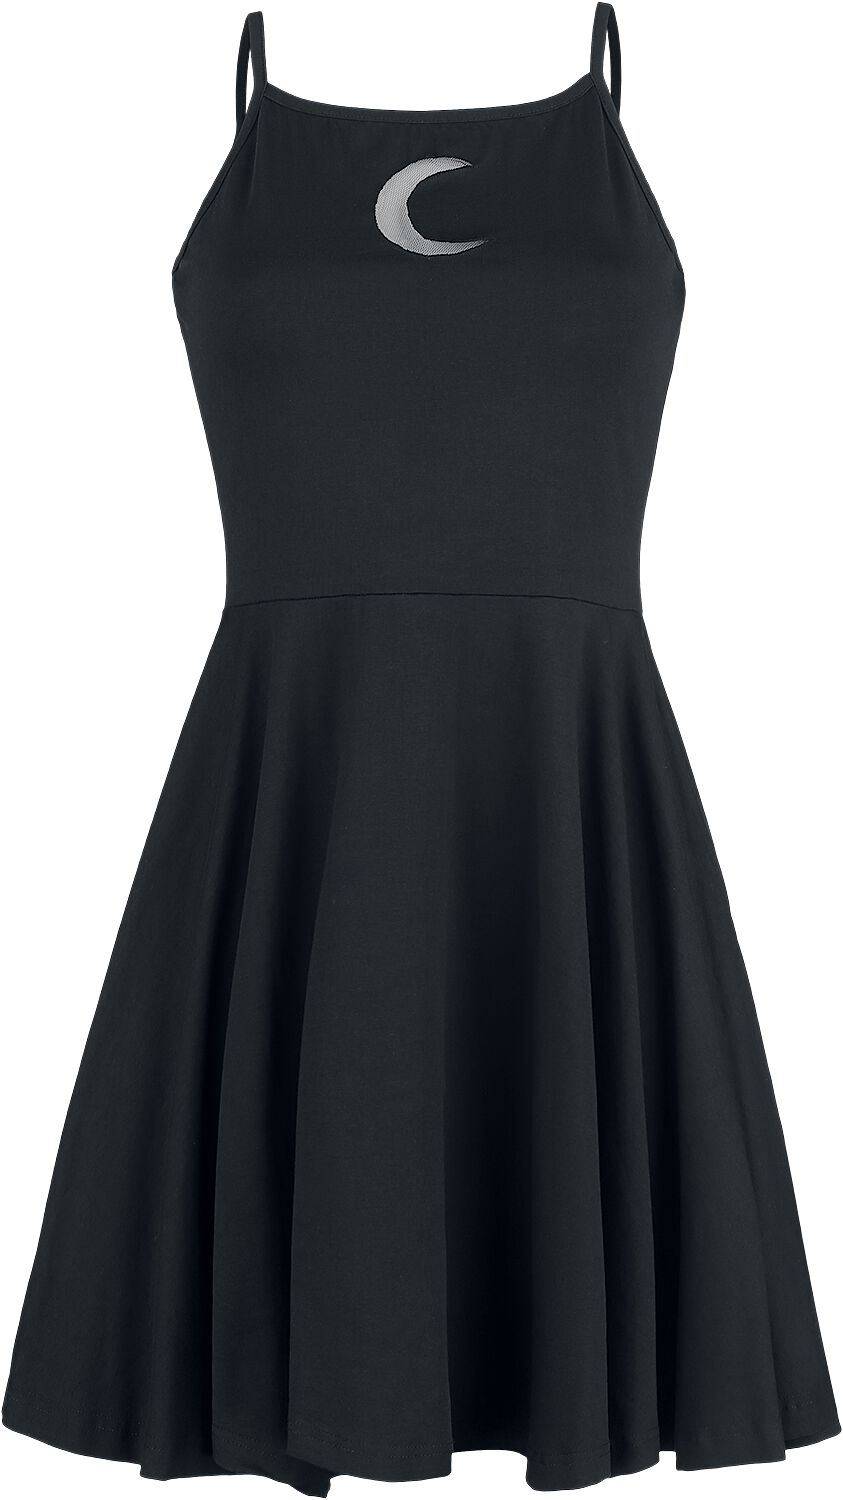 Heartless - Gothic Kurzes Kleid - Zaylee Dress - XS bis XL - für Damen - Größe M - schwarz